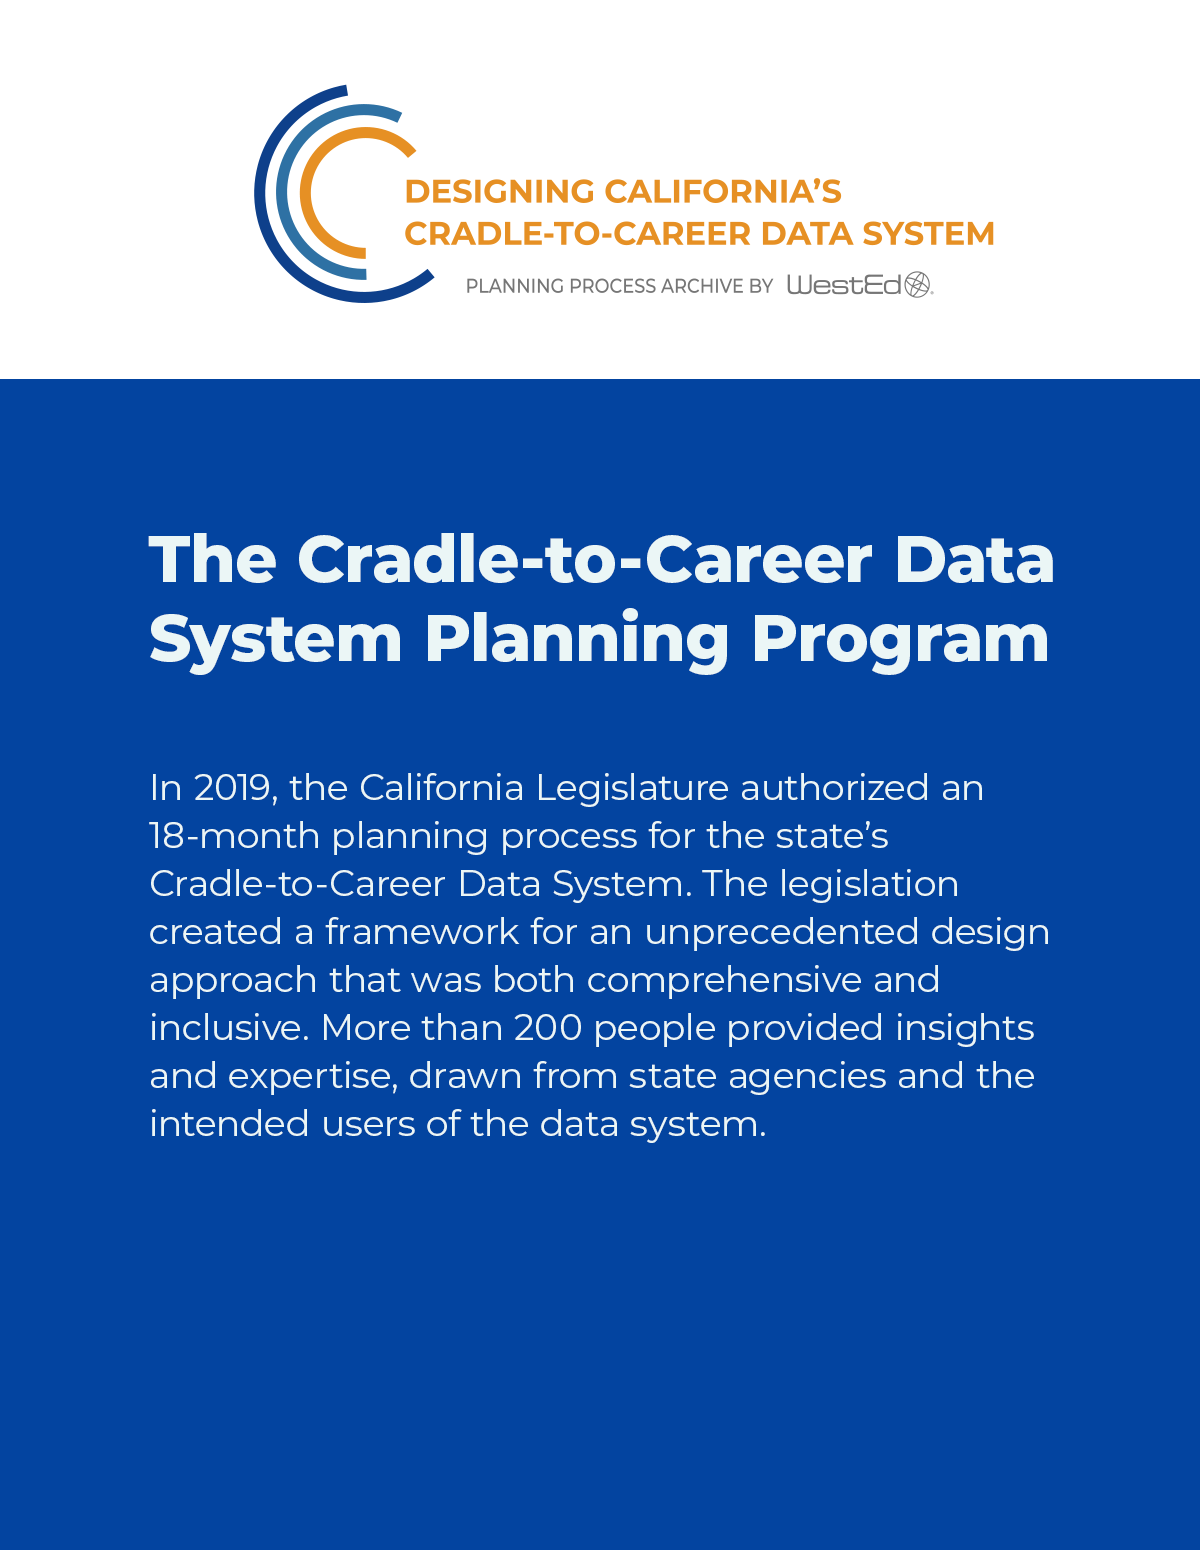 Designing California's Cradle-to-Career Data System